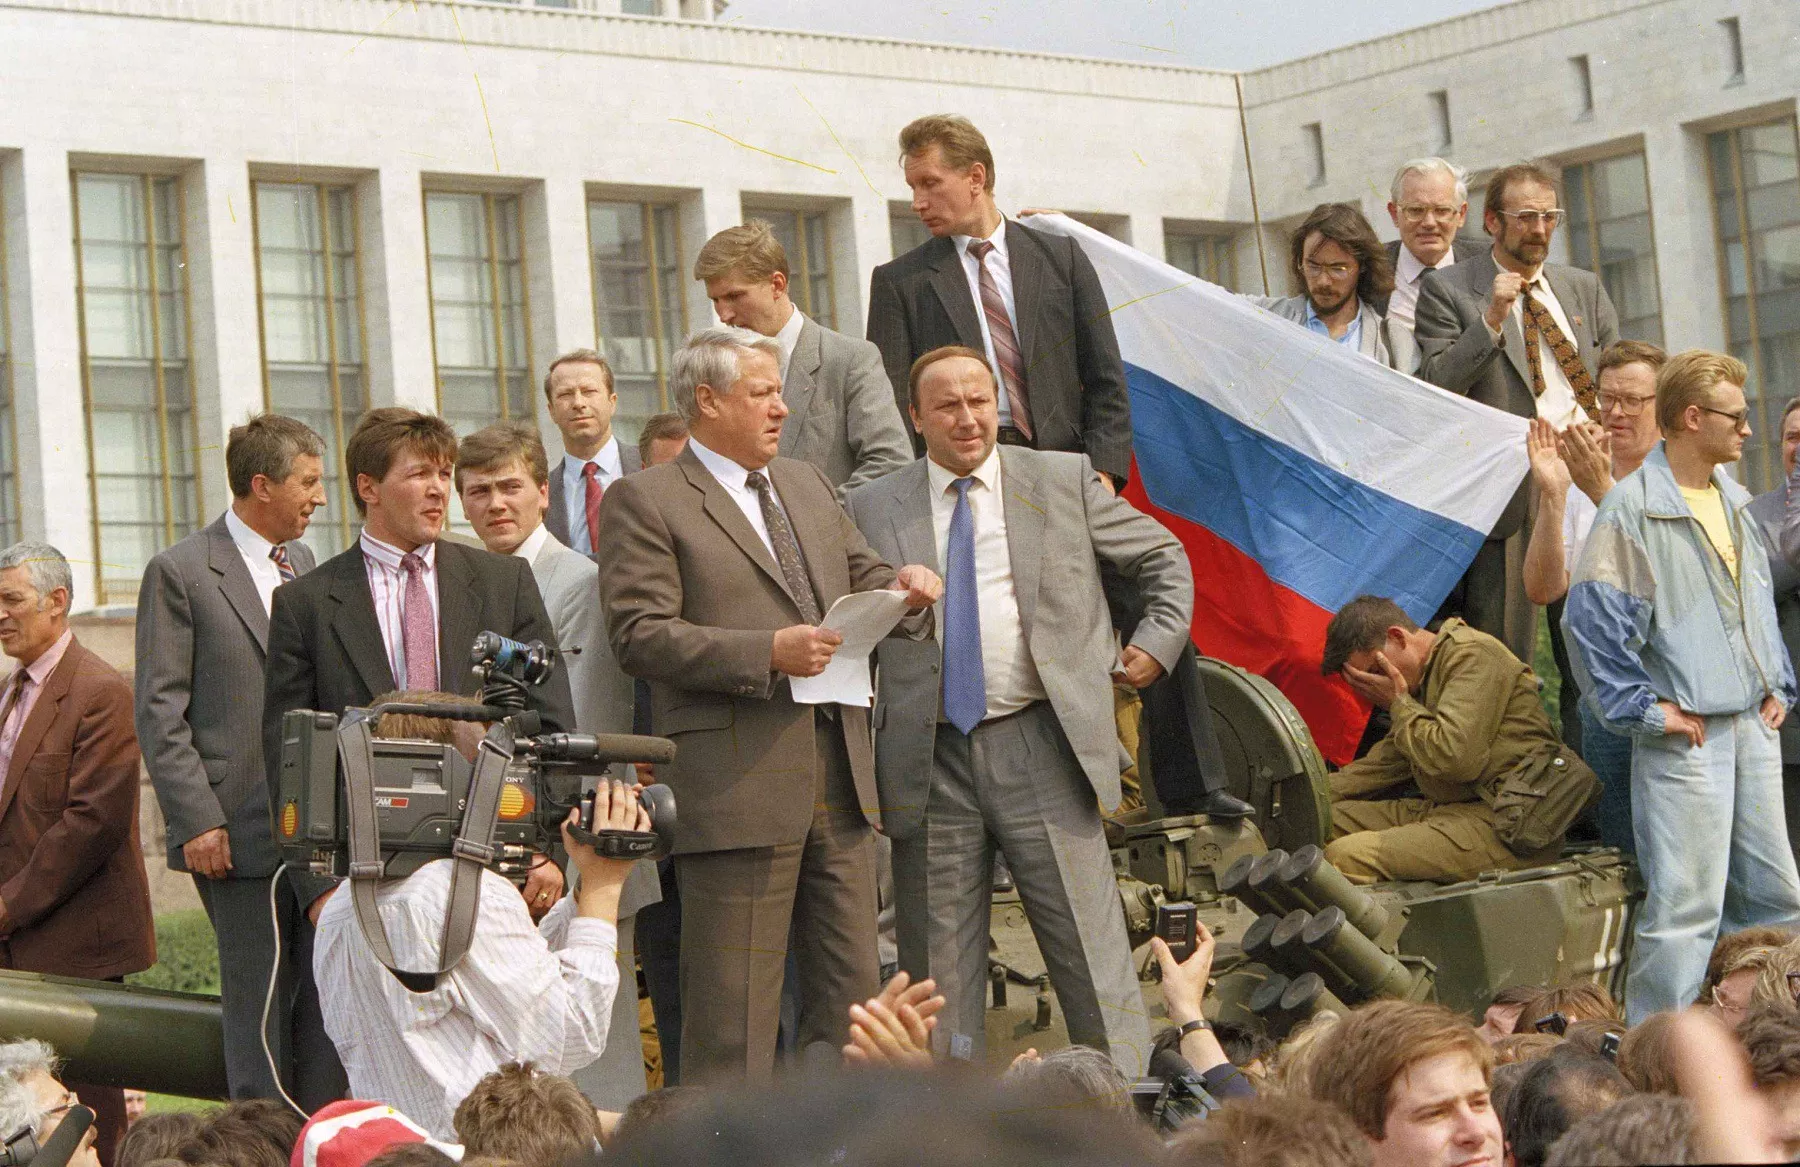 Золотова в Кремле называют дураком и вором. Но трижды ему повезло – был телохранителем Ельцина (на фото – баррикада у "Белого дома" во время путча ГКЧП в 1991 году, Золотов справа от Ельцина и выше всех в кадре), затем Собчака, а затем и Путина